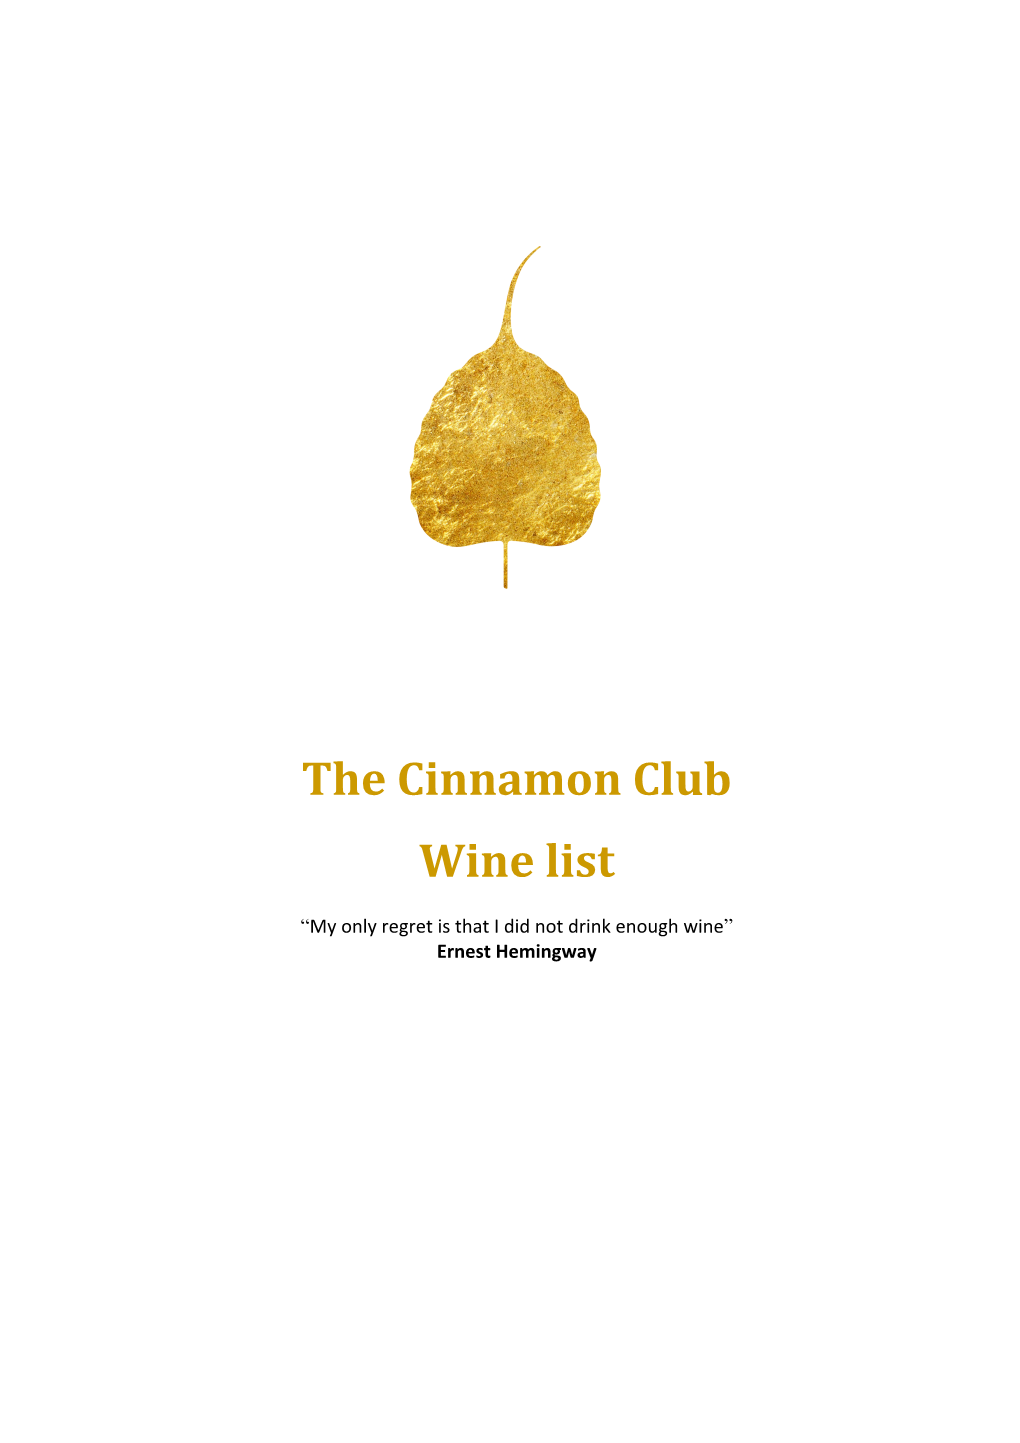 The Cinnamon Club Wine List